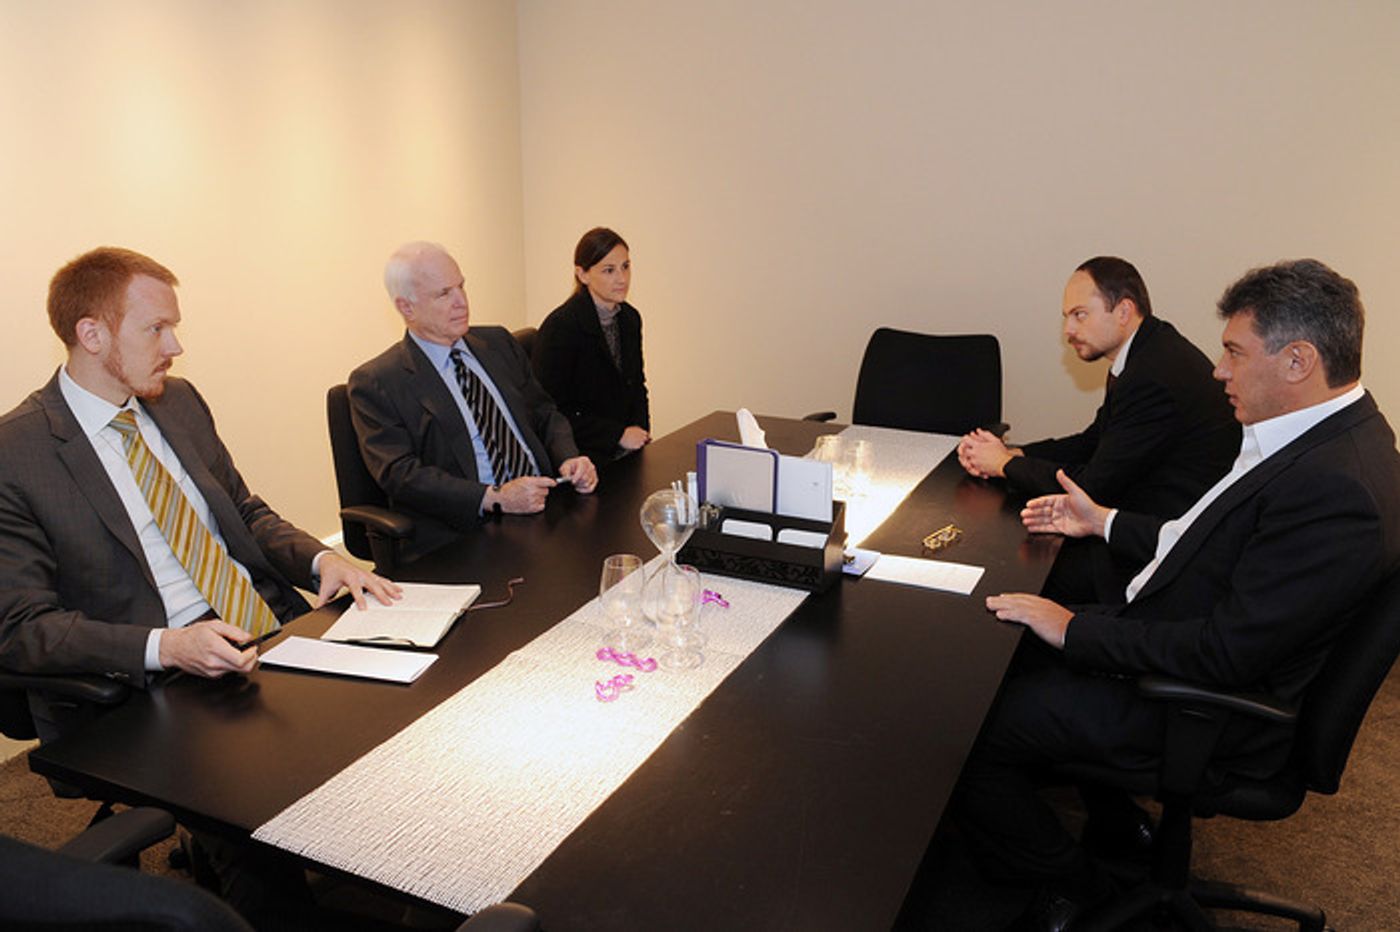 Первая встреча по «закону Магнитского»: 15 ноября 2010 года Борис Немцов, Владимир Кара-Мурза и американский сенатор Джон Маккейн в переговорной комнате вашингтонского W Hotel 